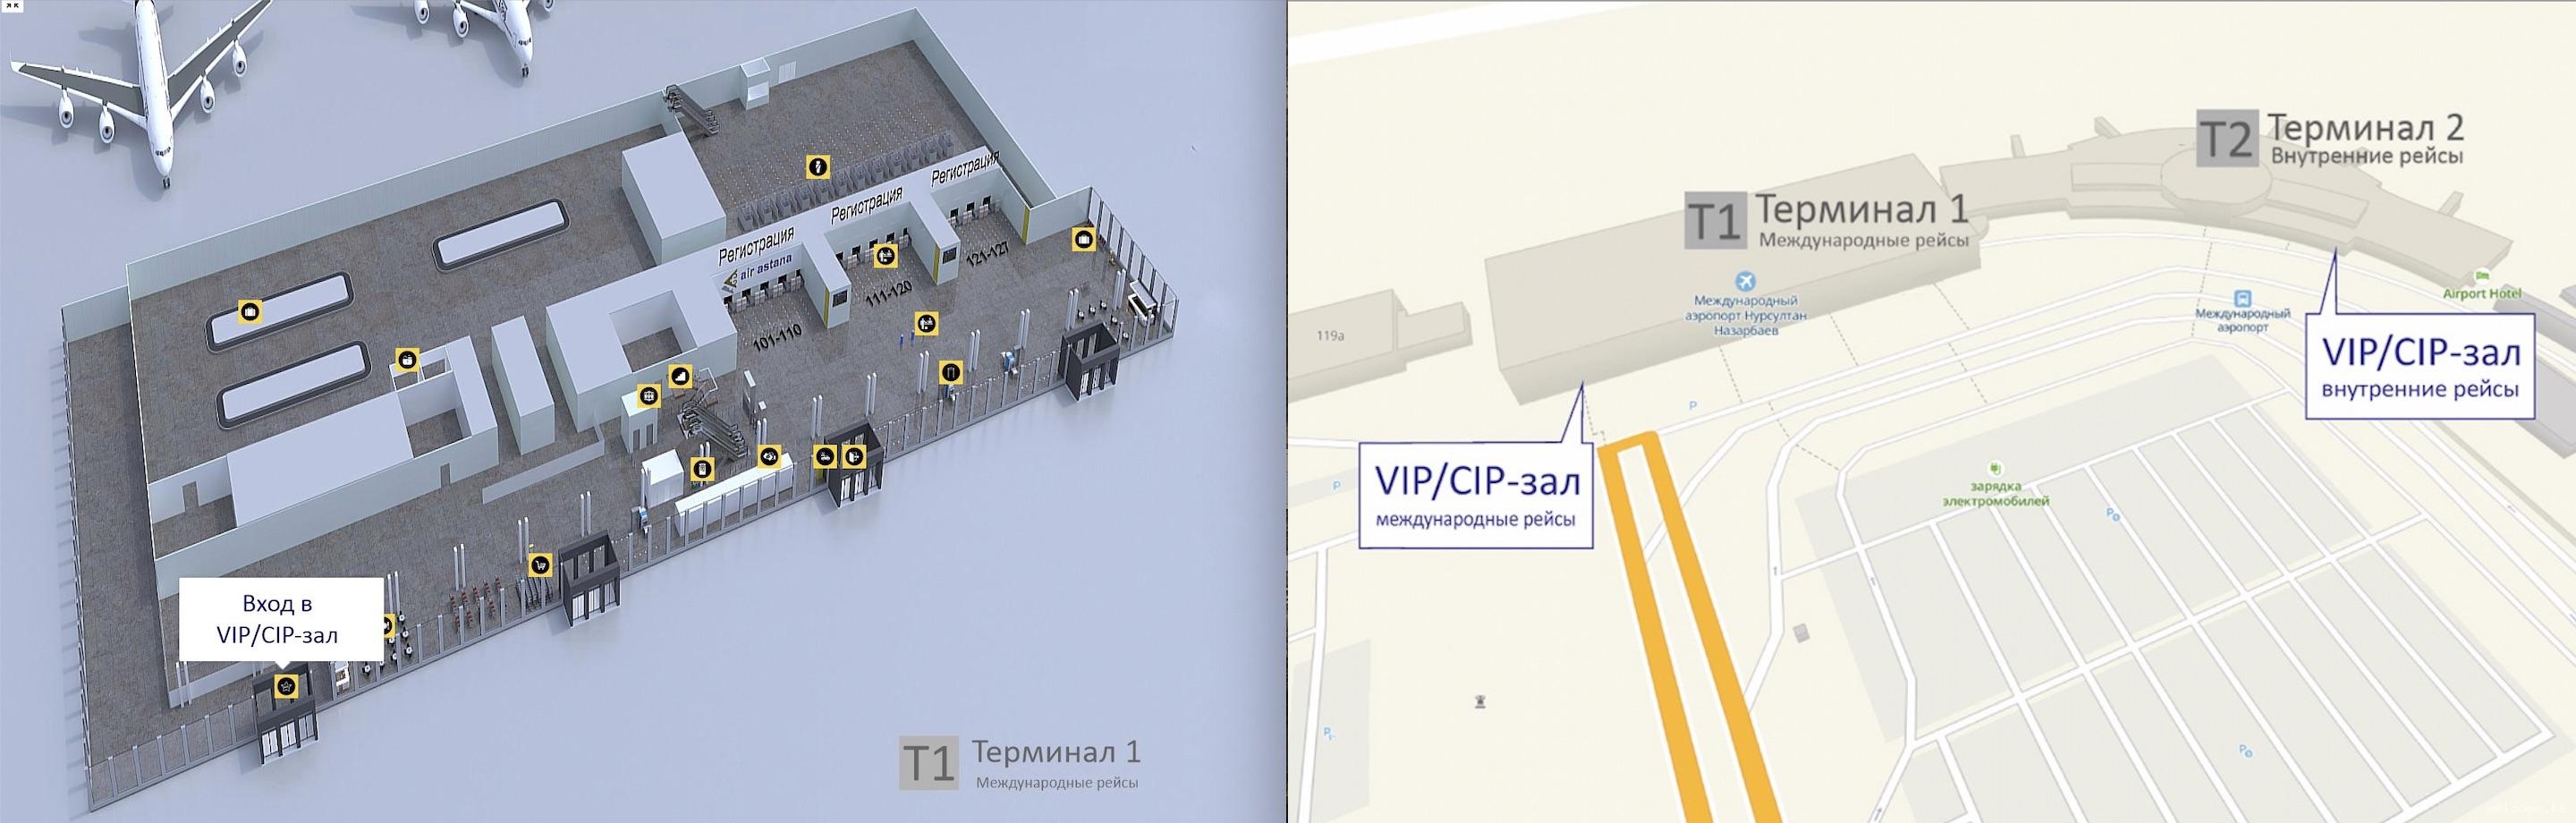 VIP/CIP-зал в аэропорту Астаны